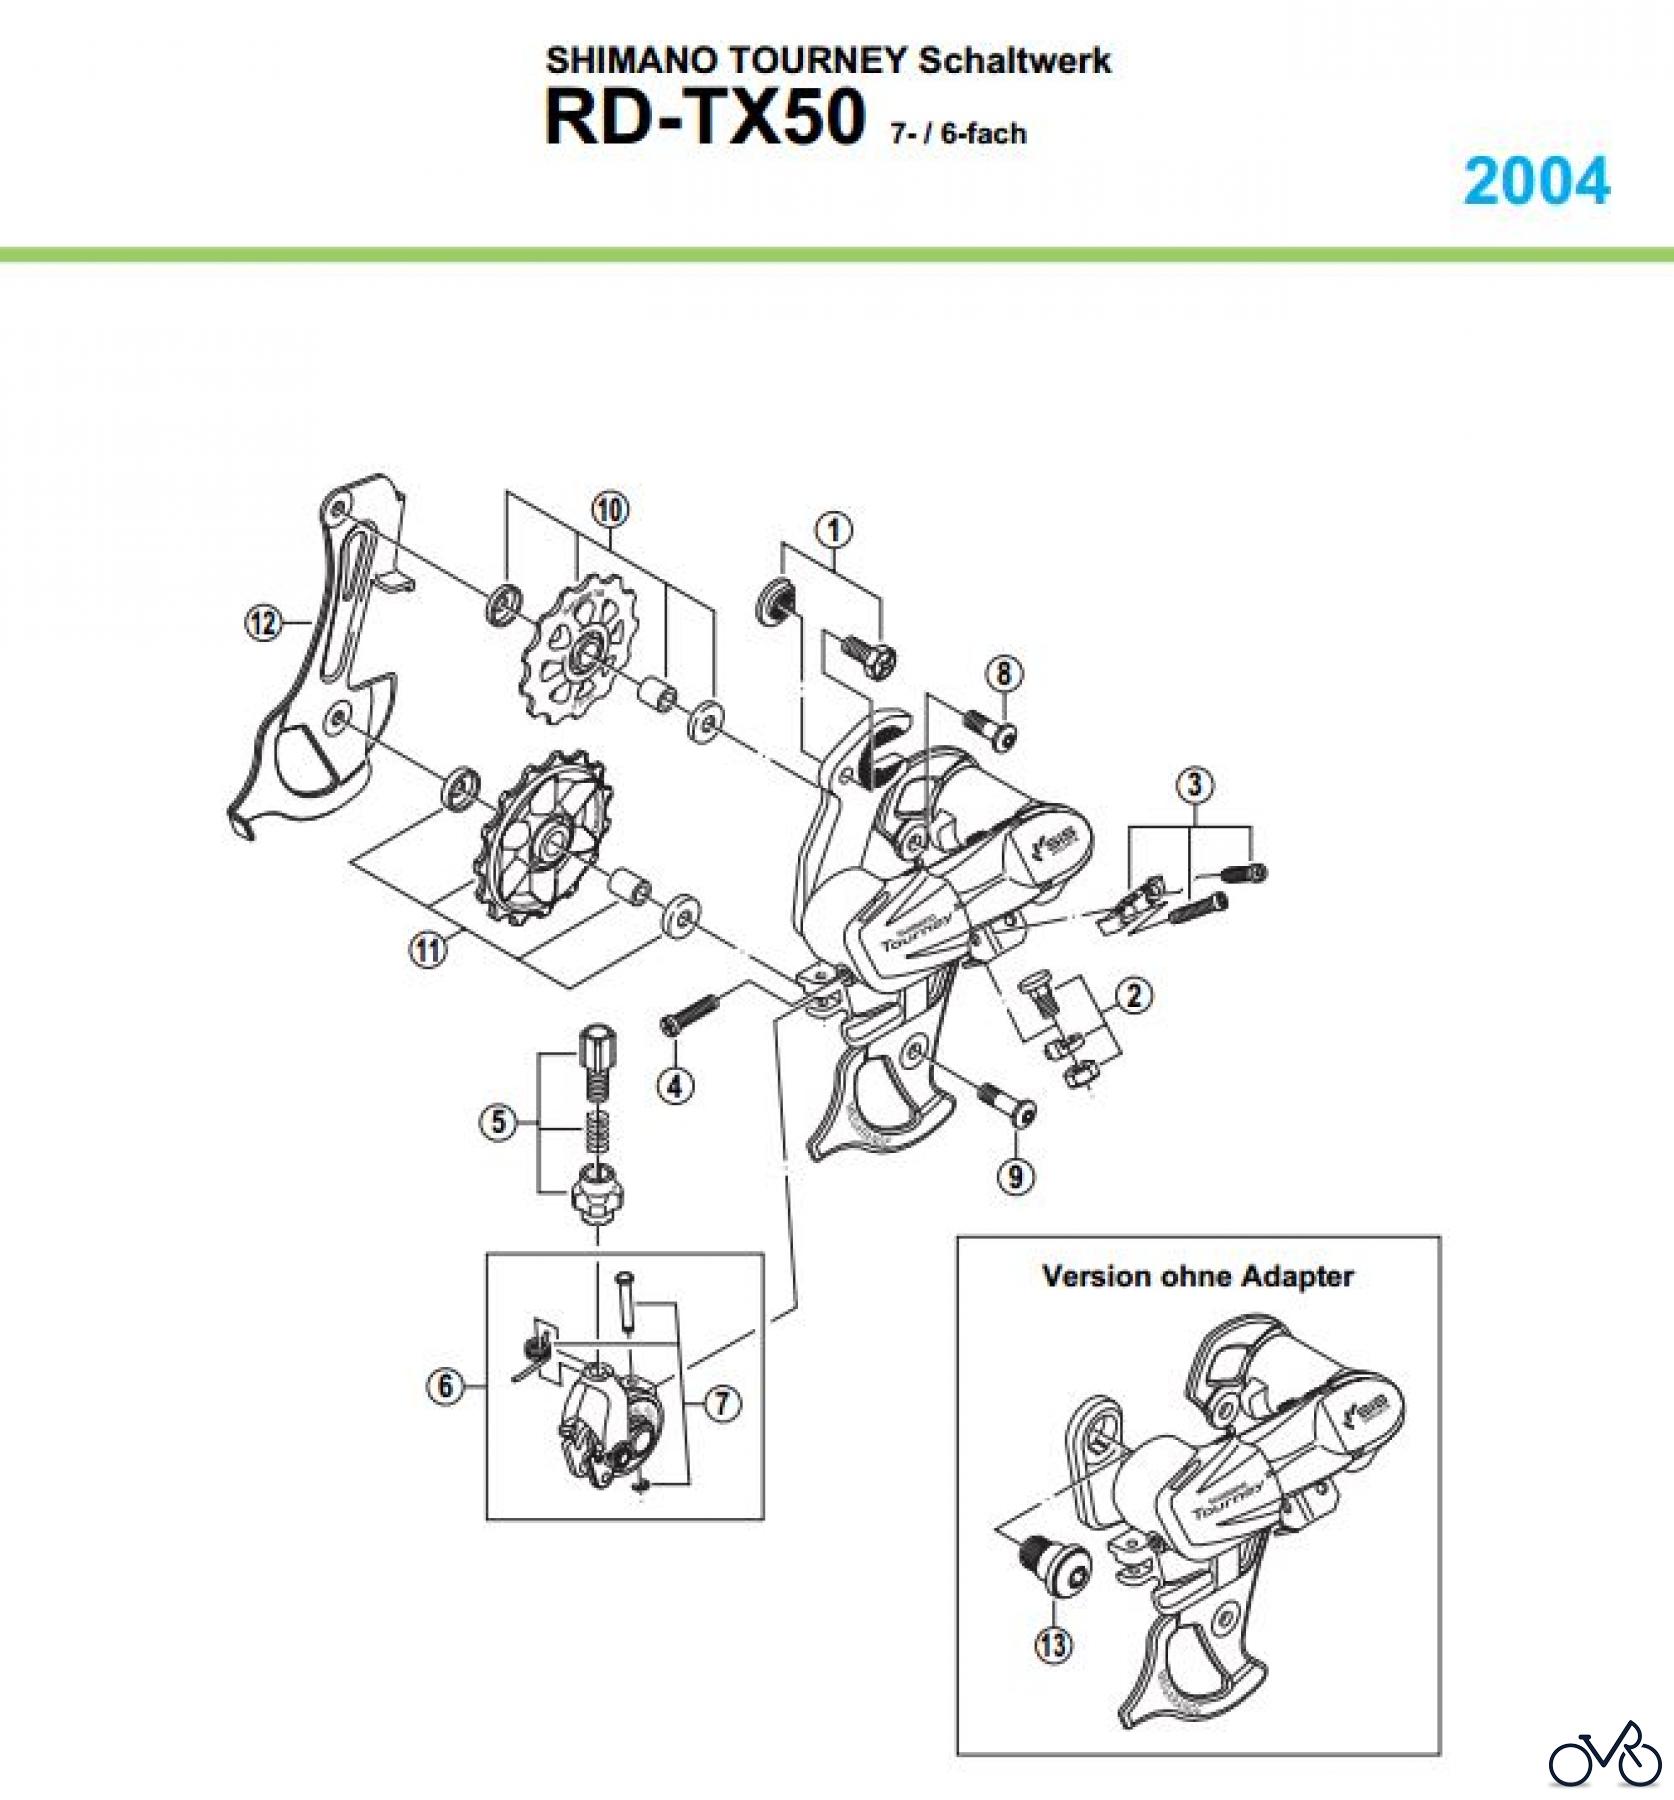  Shimano RD Rear Derailleur - Schaltwerk RD-TX50-04